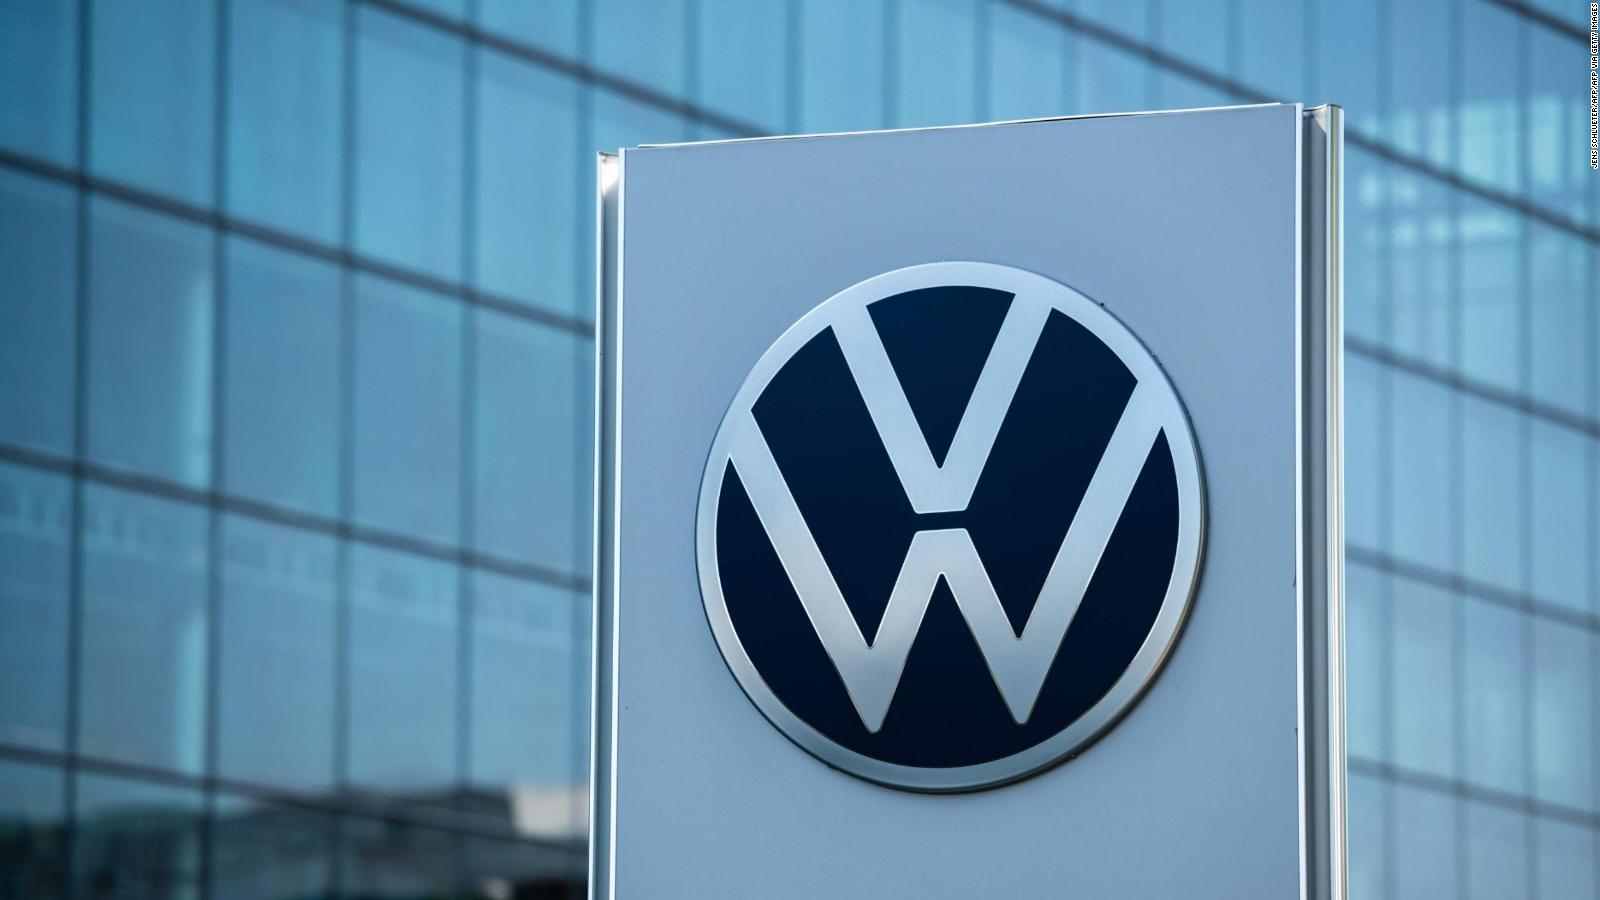 Imágenes de Logotipo De Volkswagen